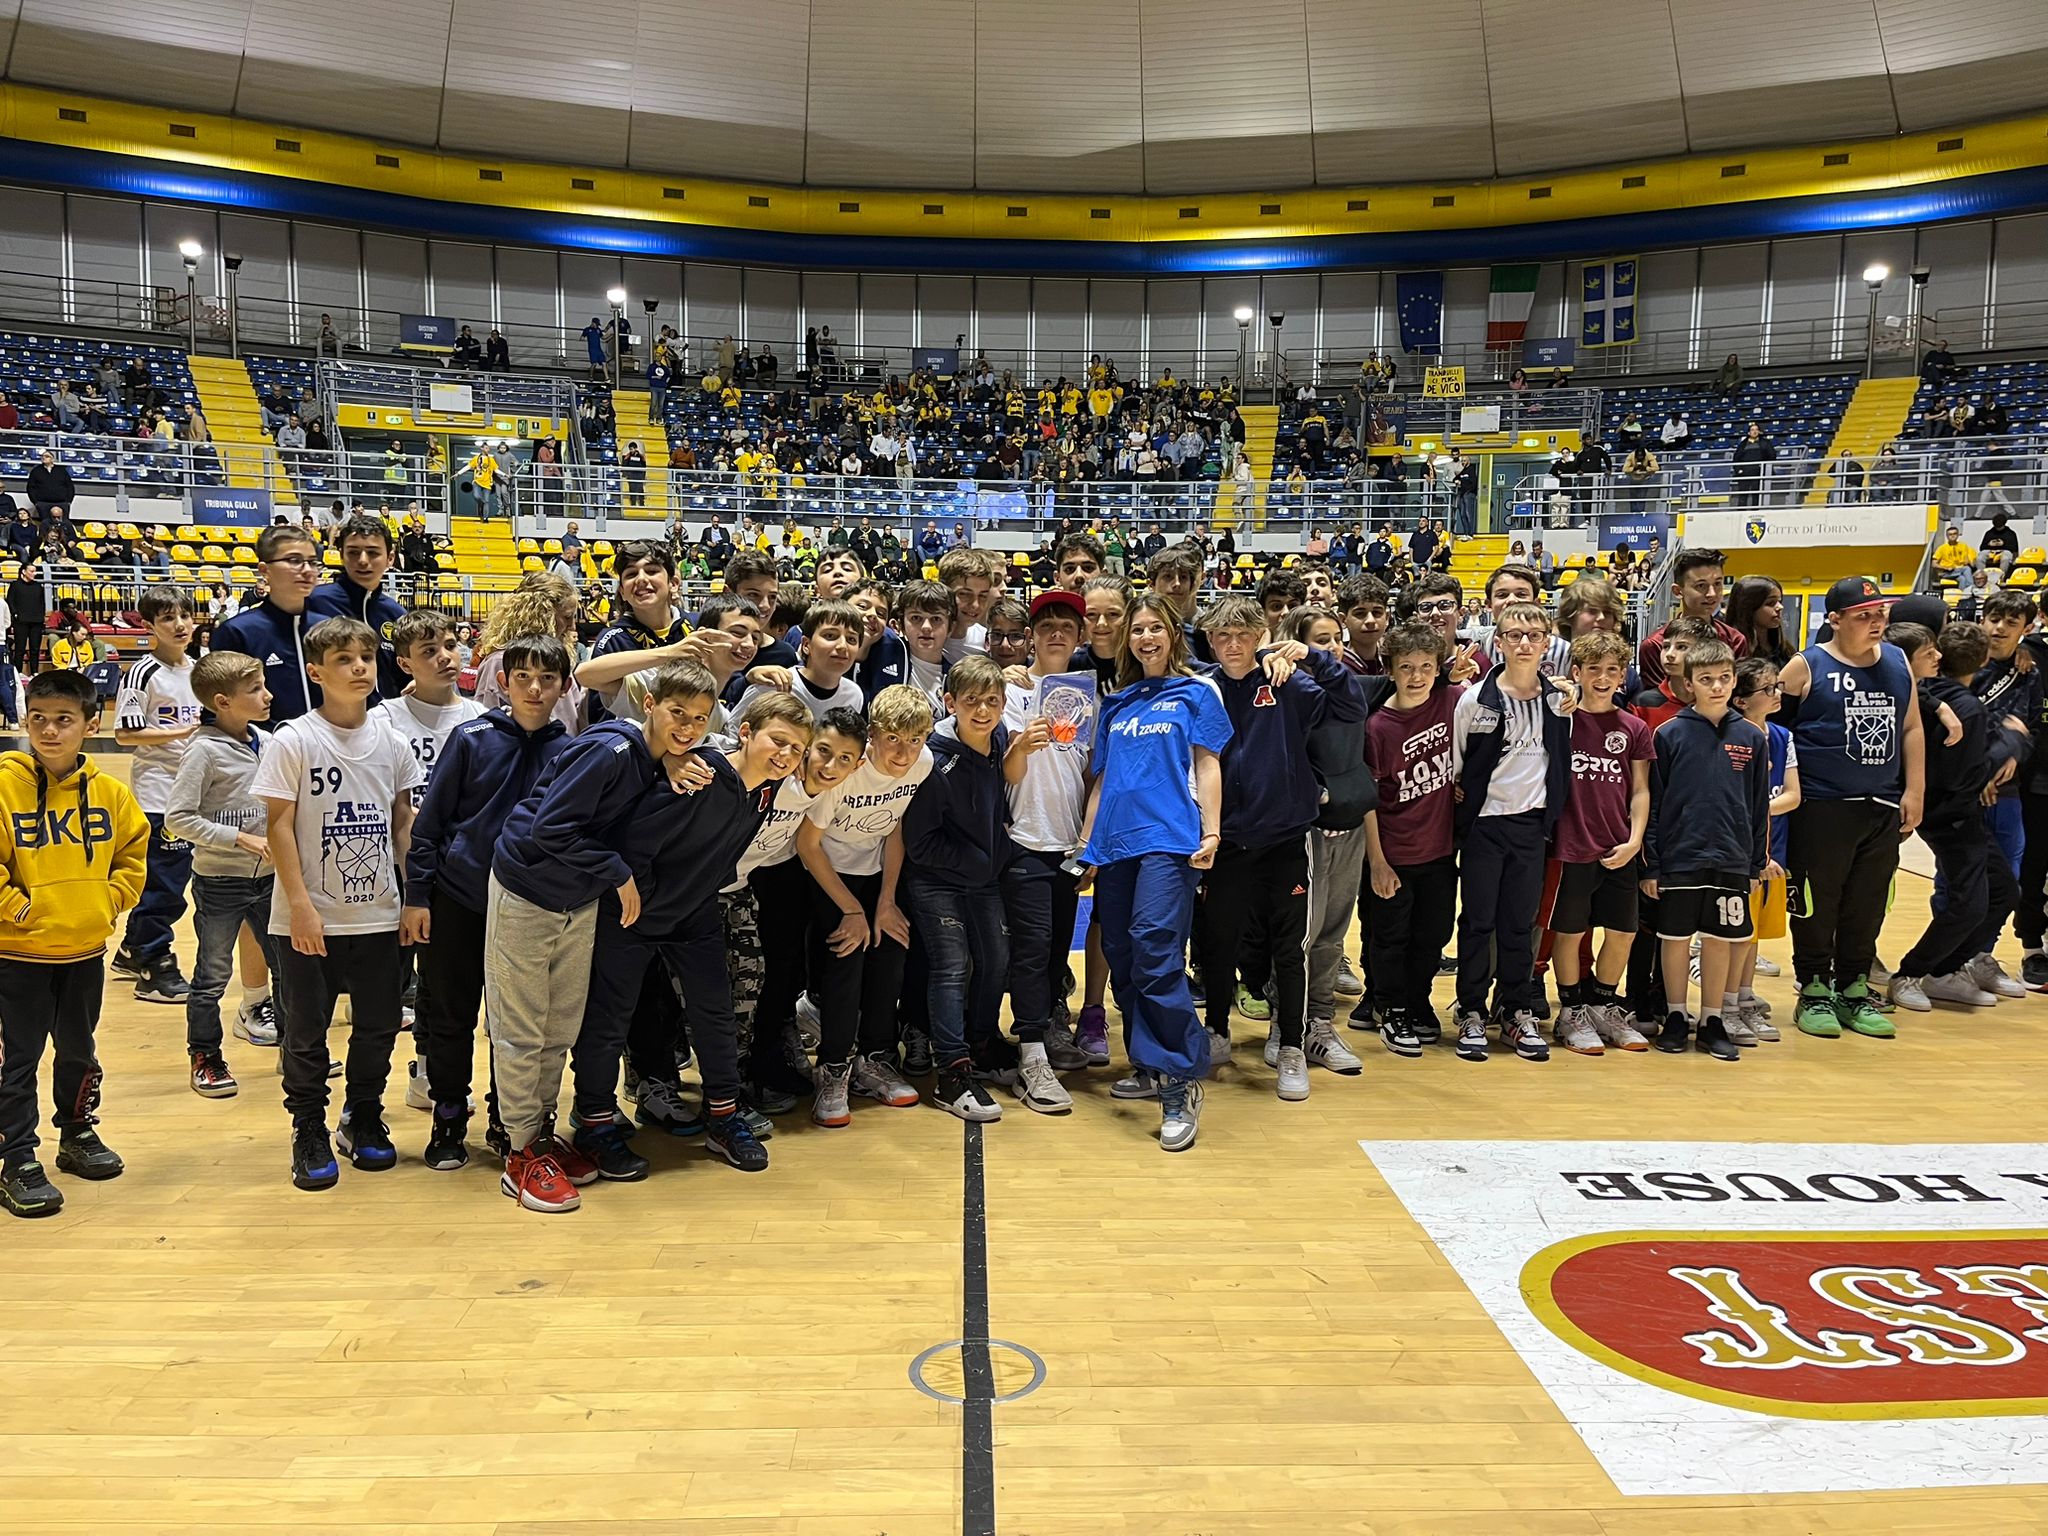 Scuola di Tifo:AreaPro020 premiata durante partita Basket Torino-Urania Milano